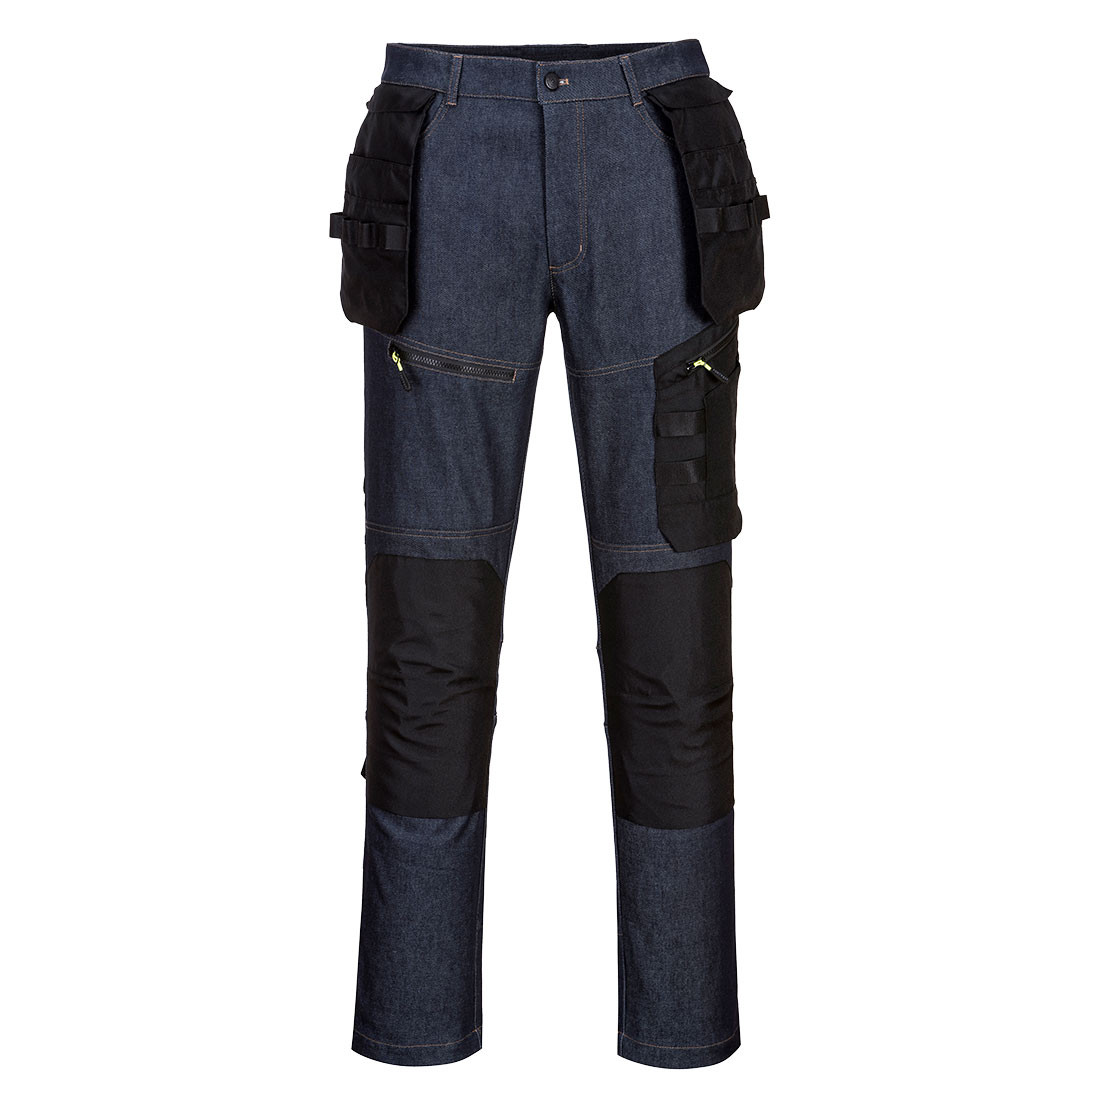 Pantalon en jean Holster KX3 - Les vêtements de protection